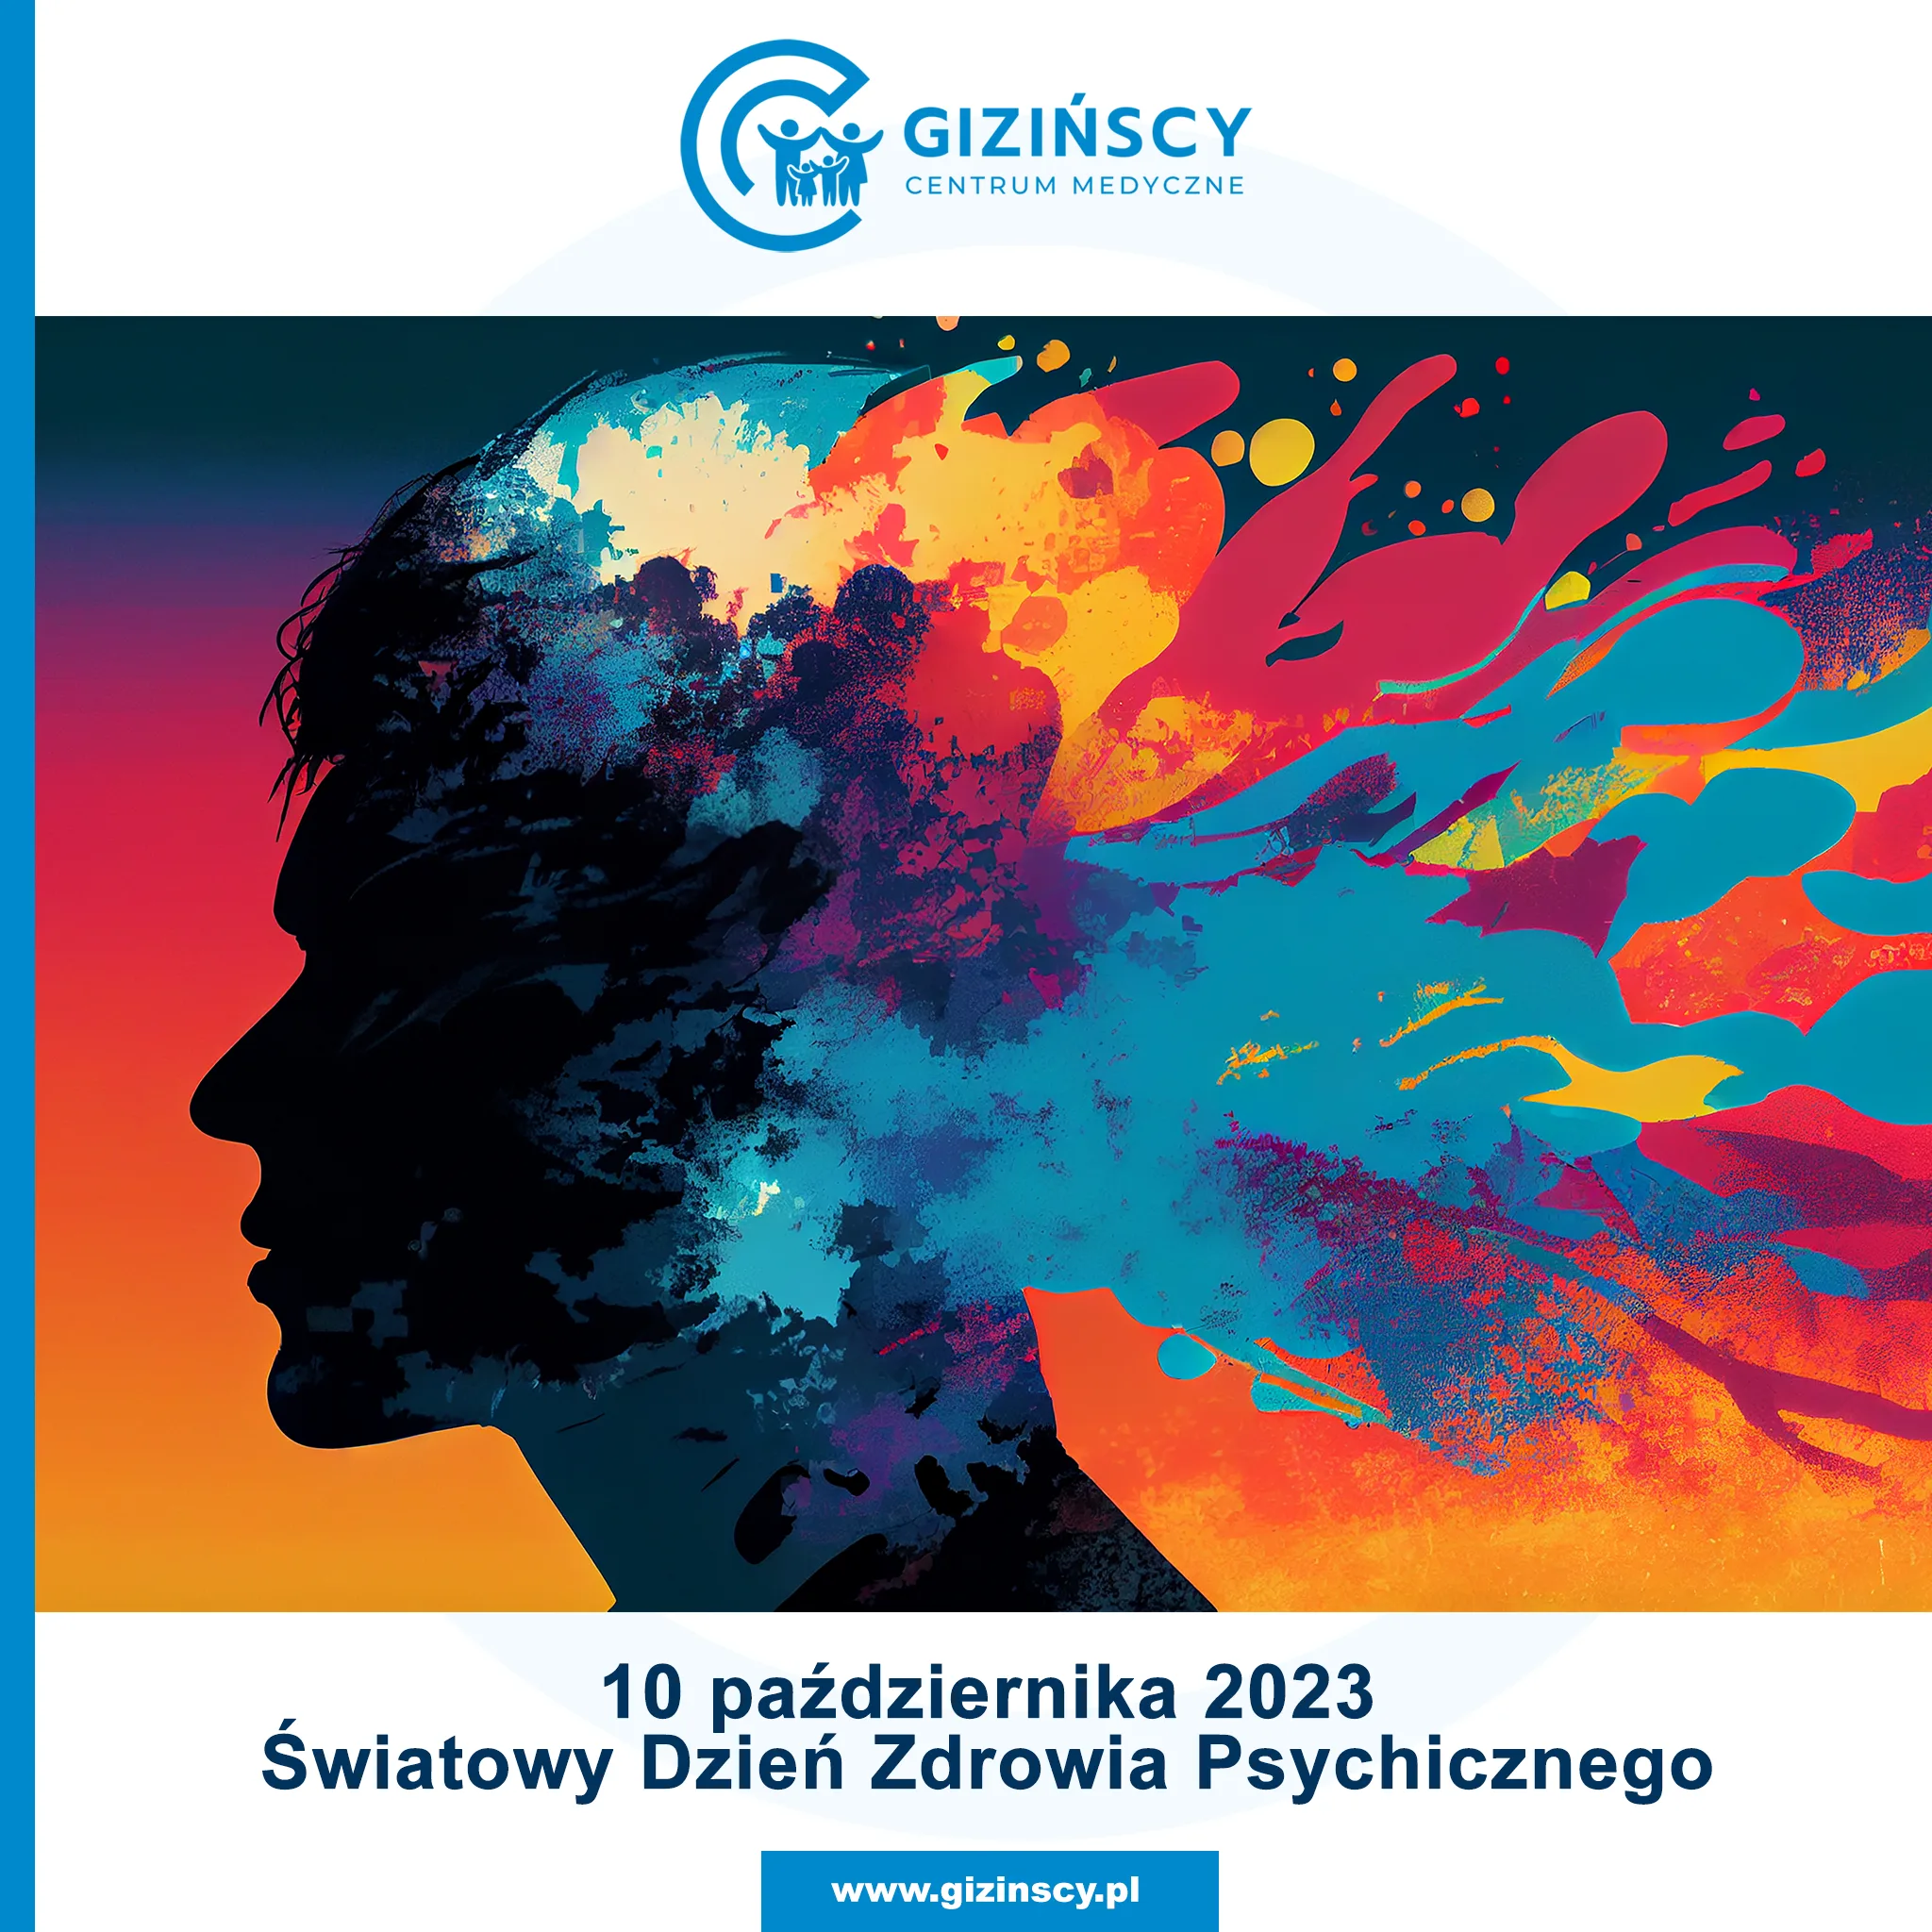 10 października zapraszamy do CM Gizińscy – Światowy Dzień Zdrowia Psychicznego